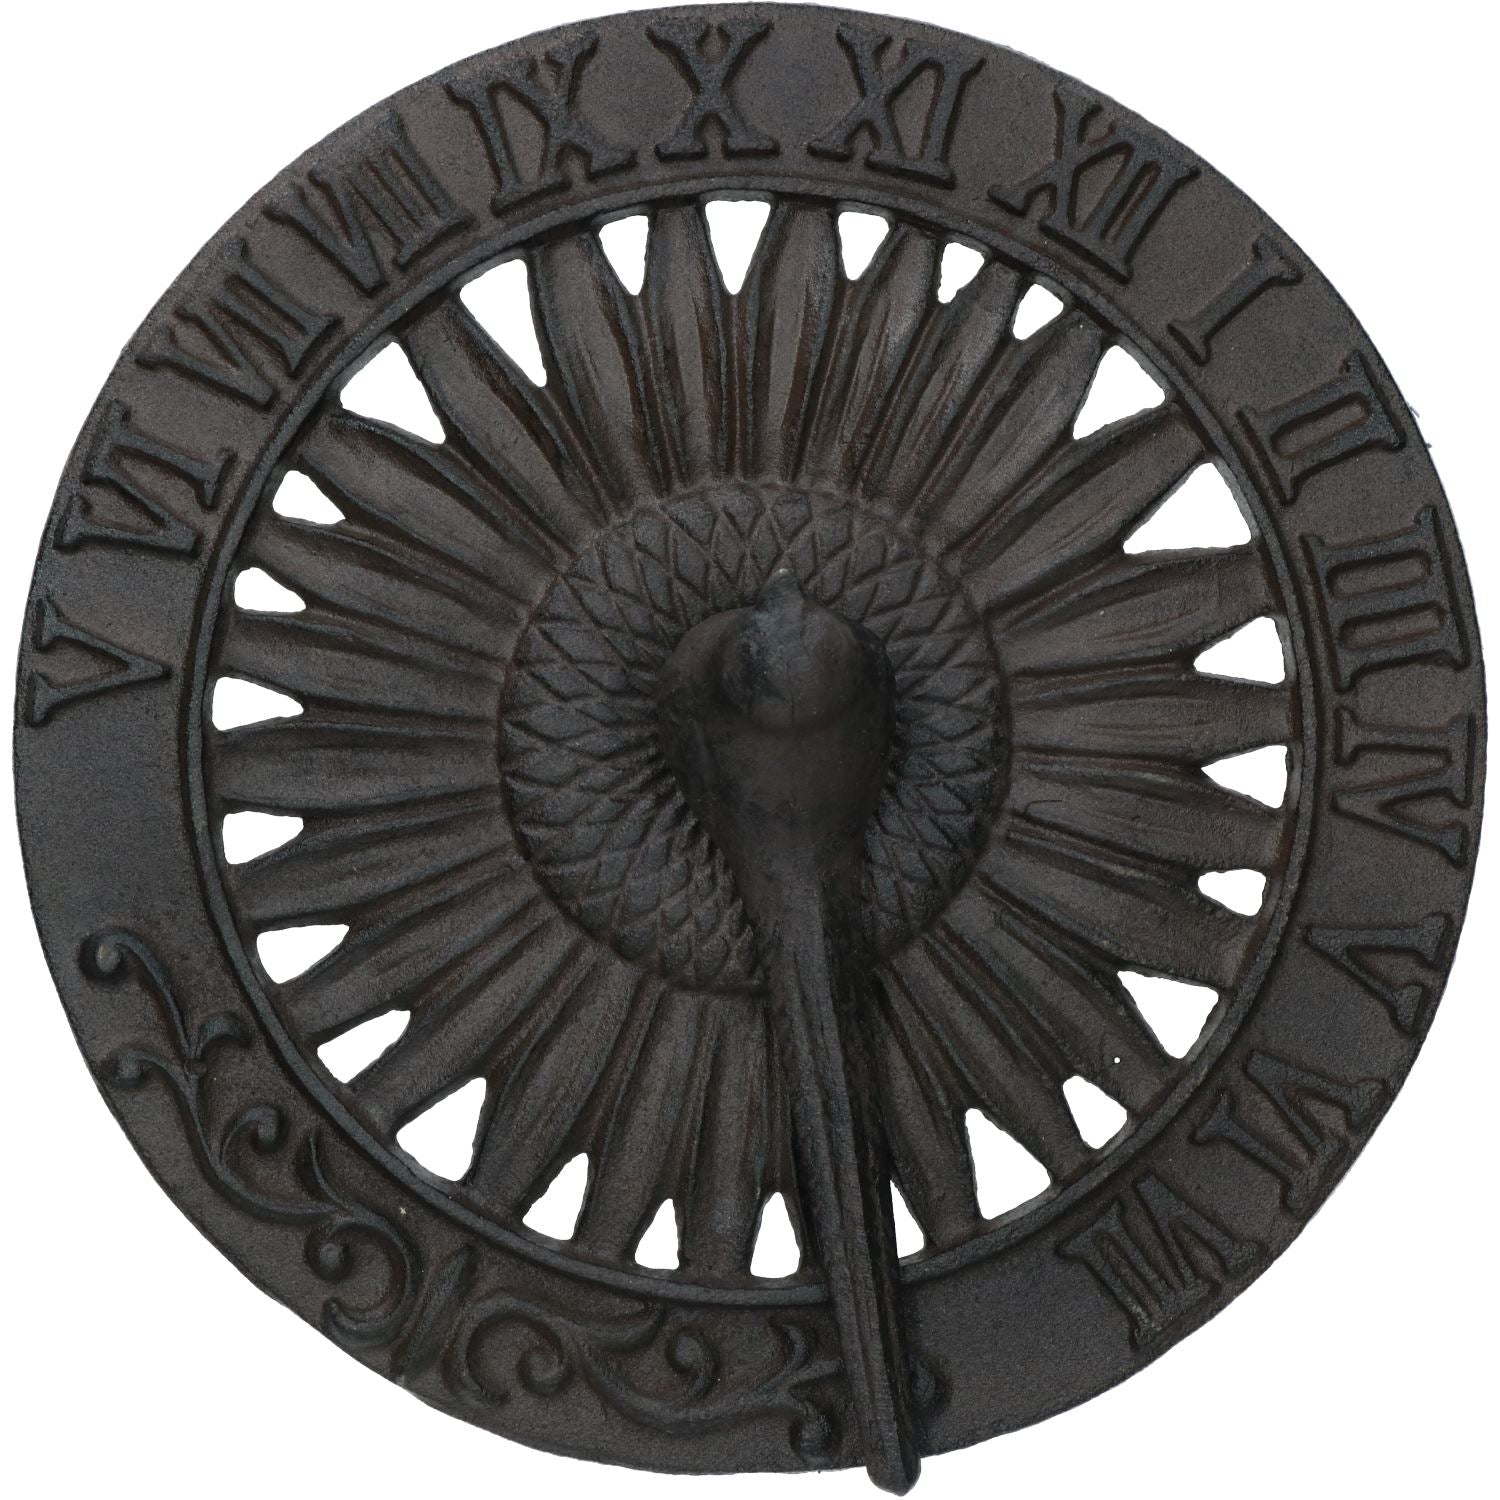 Bird Sundial Ornament Cast Iron Garden Feature Statue Sunflower Clock Metal